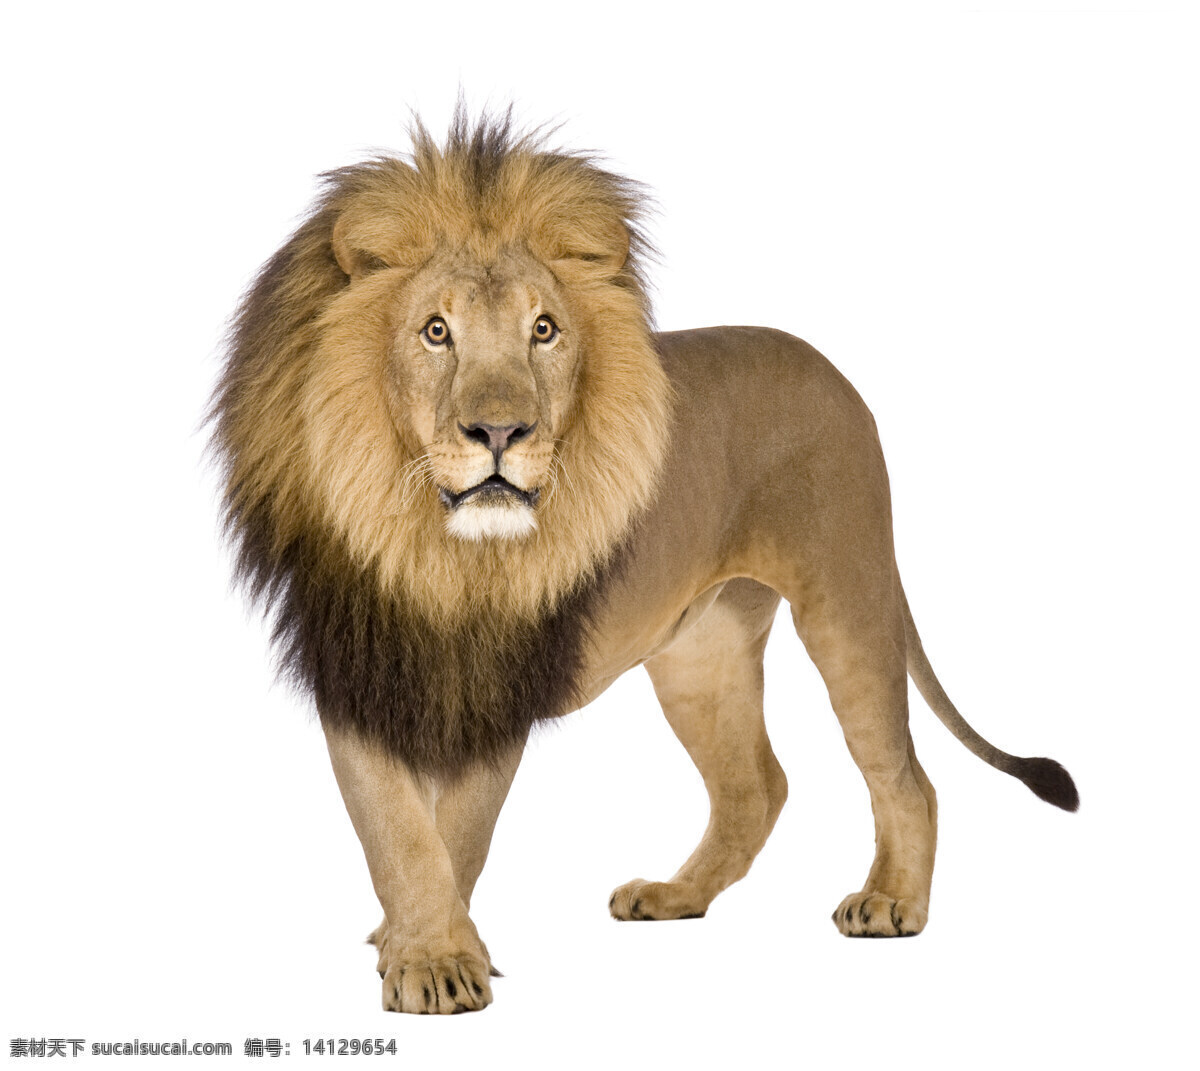 狮子图片 狮子 动物 精美图片 印刷适用 高清图片 创意图片 生物世界 野生动物 摄影图库